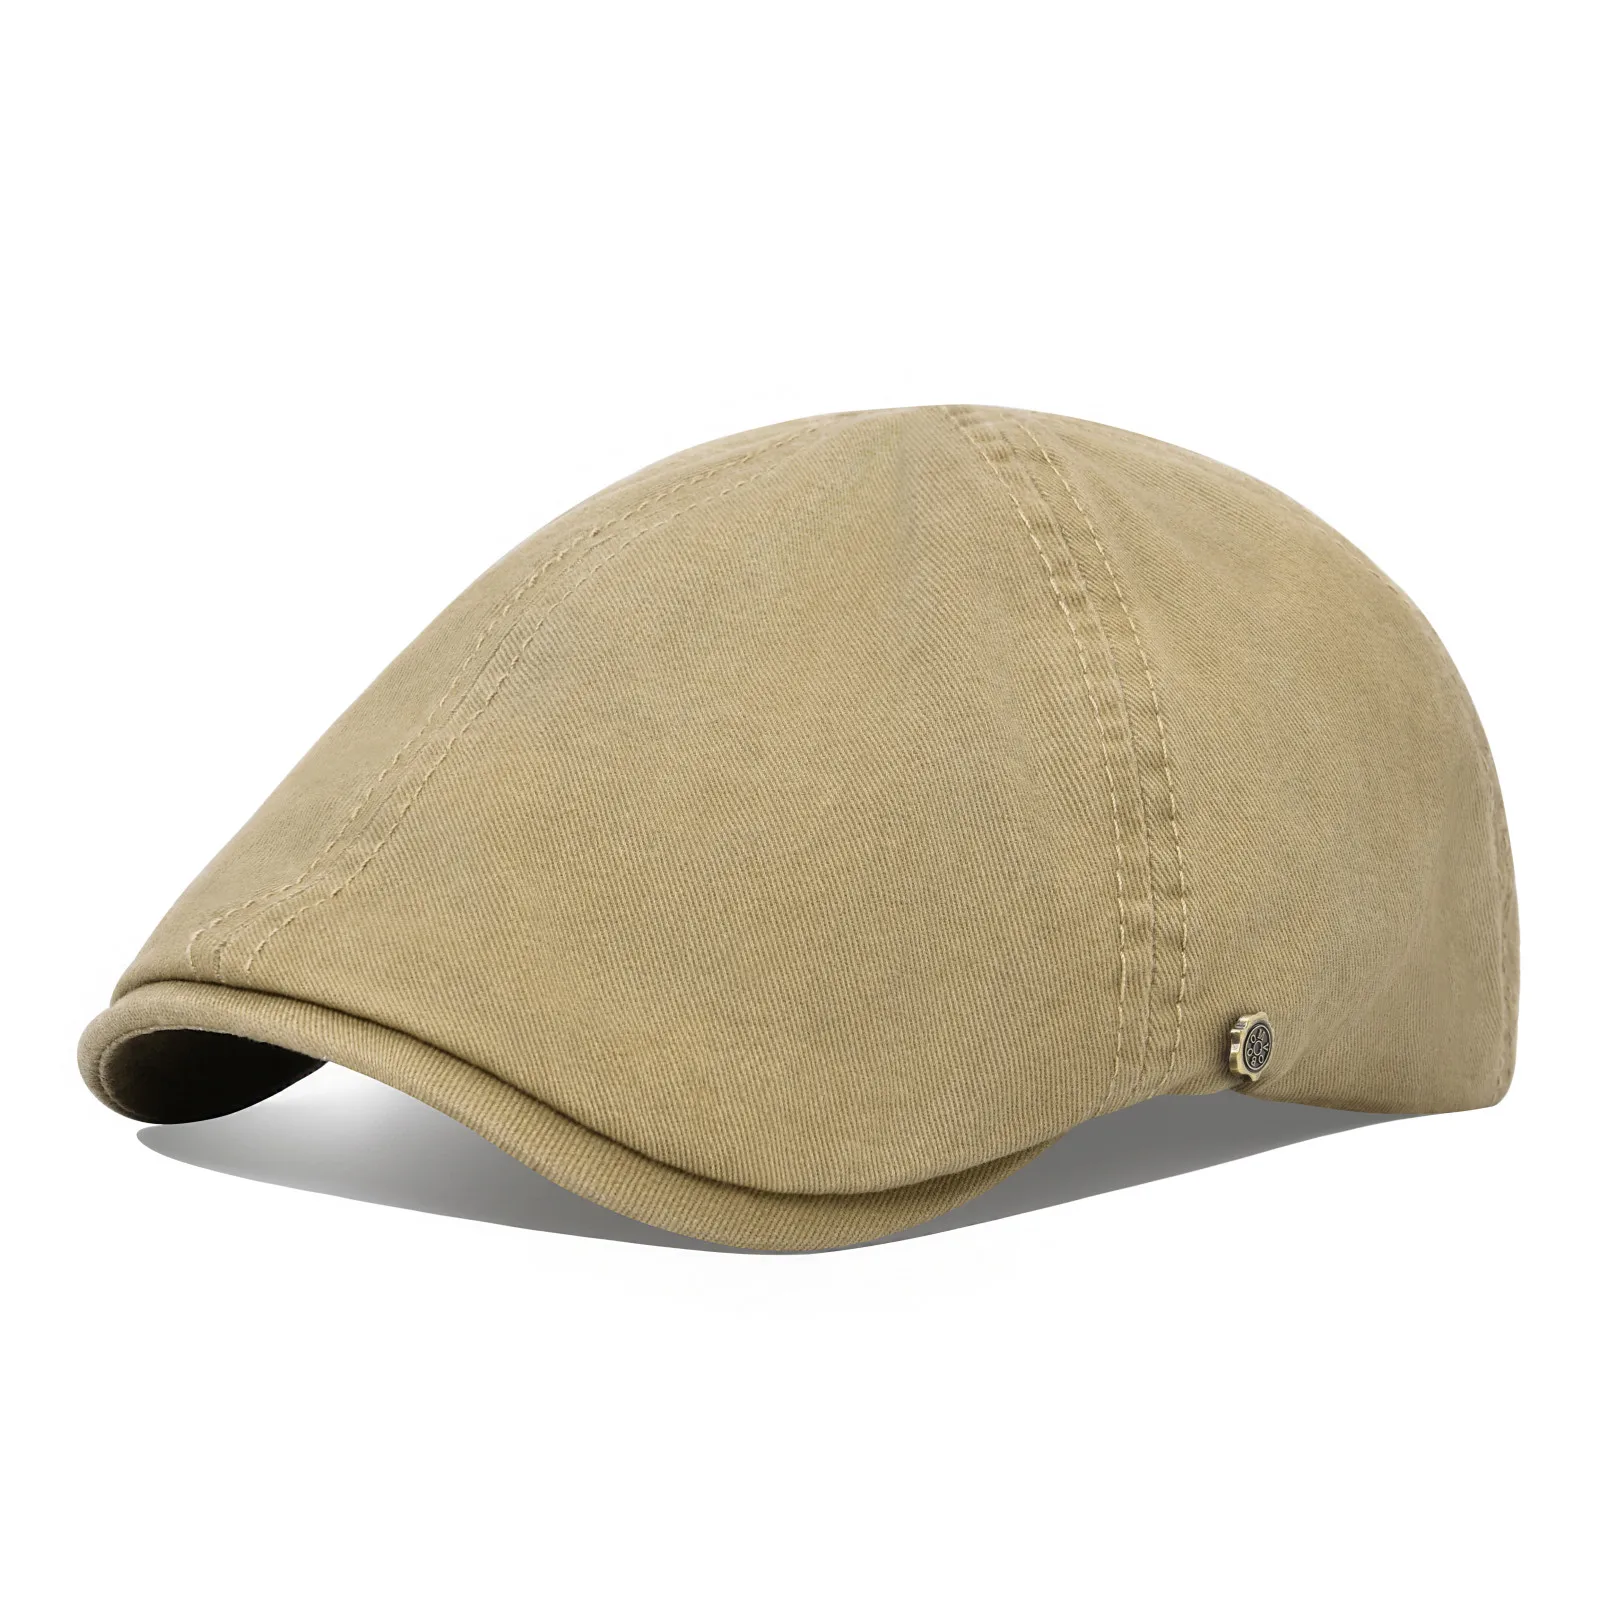 

100% Man's Beret Cotton Gatsby Hat Ivy Cap Irish Hunting Newsboy Cap Flat Cap Cabbie Hats Driving Golf Caps men cap